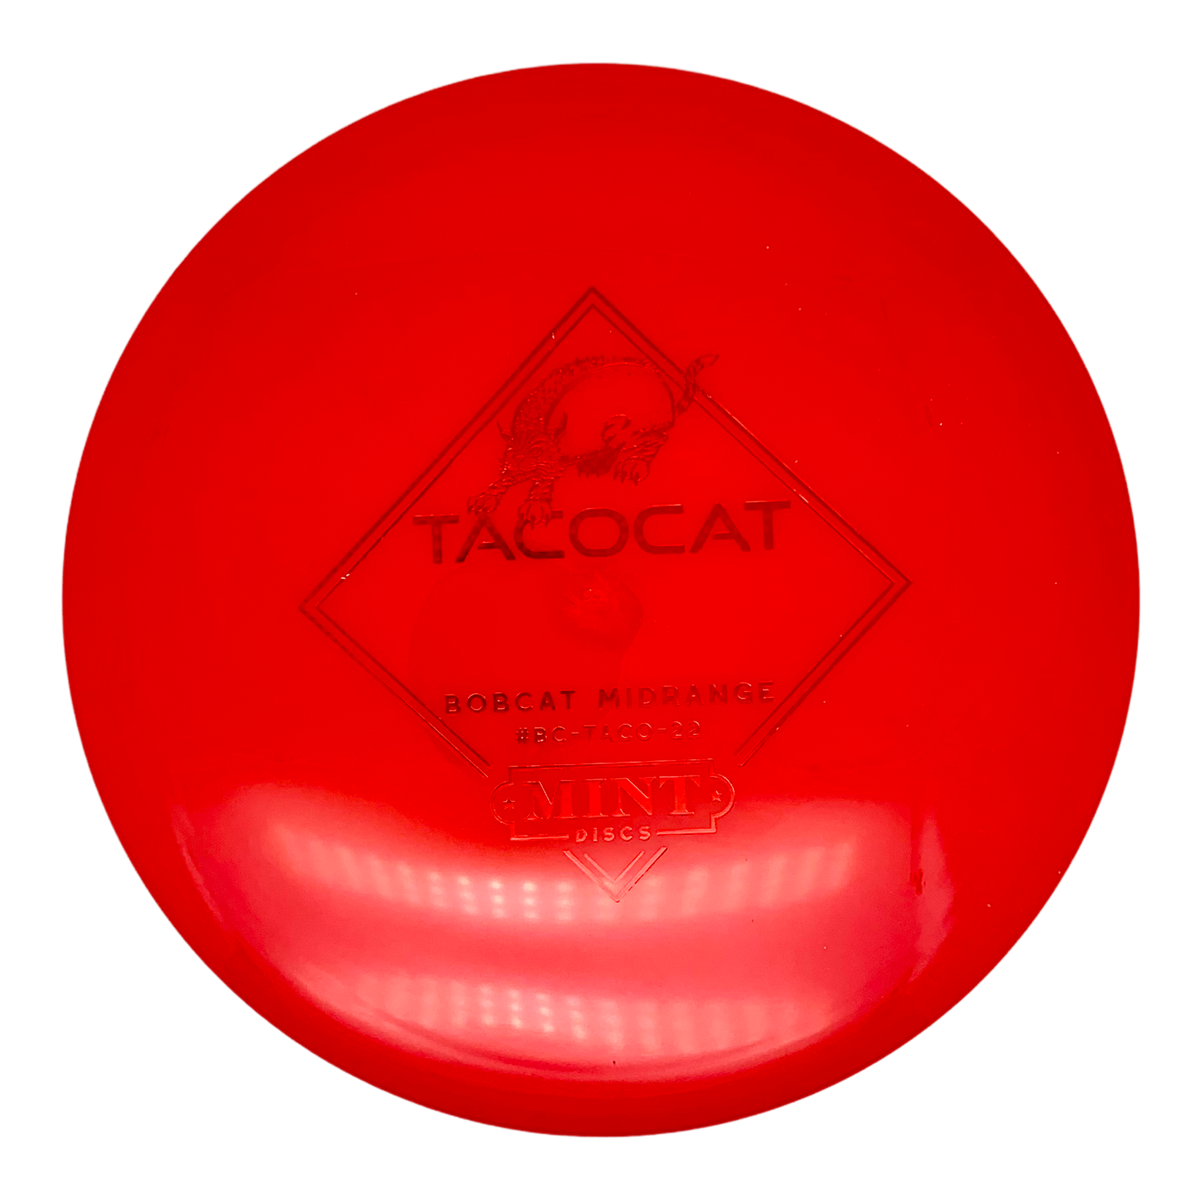 Mint Discs Sublime Bobcat - TACOCAT